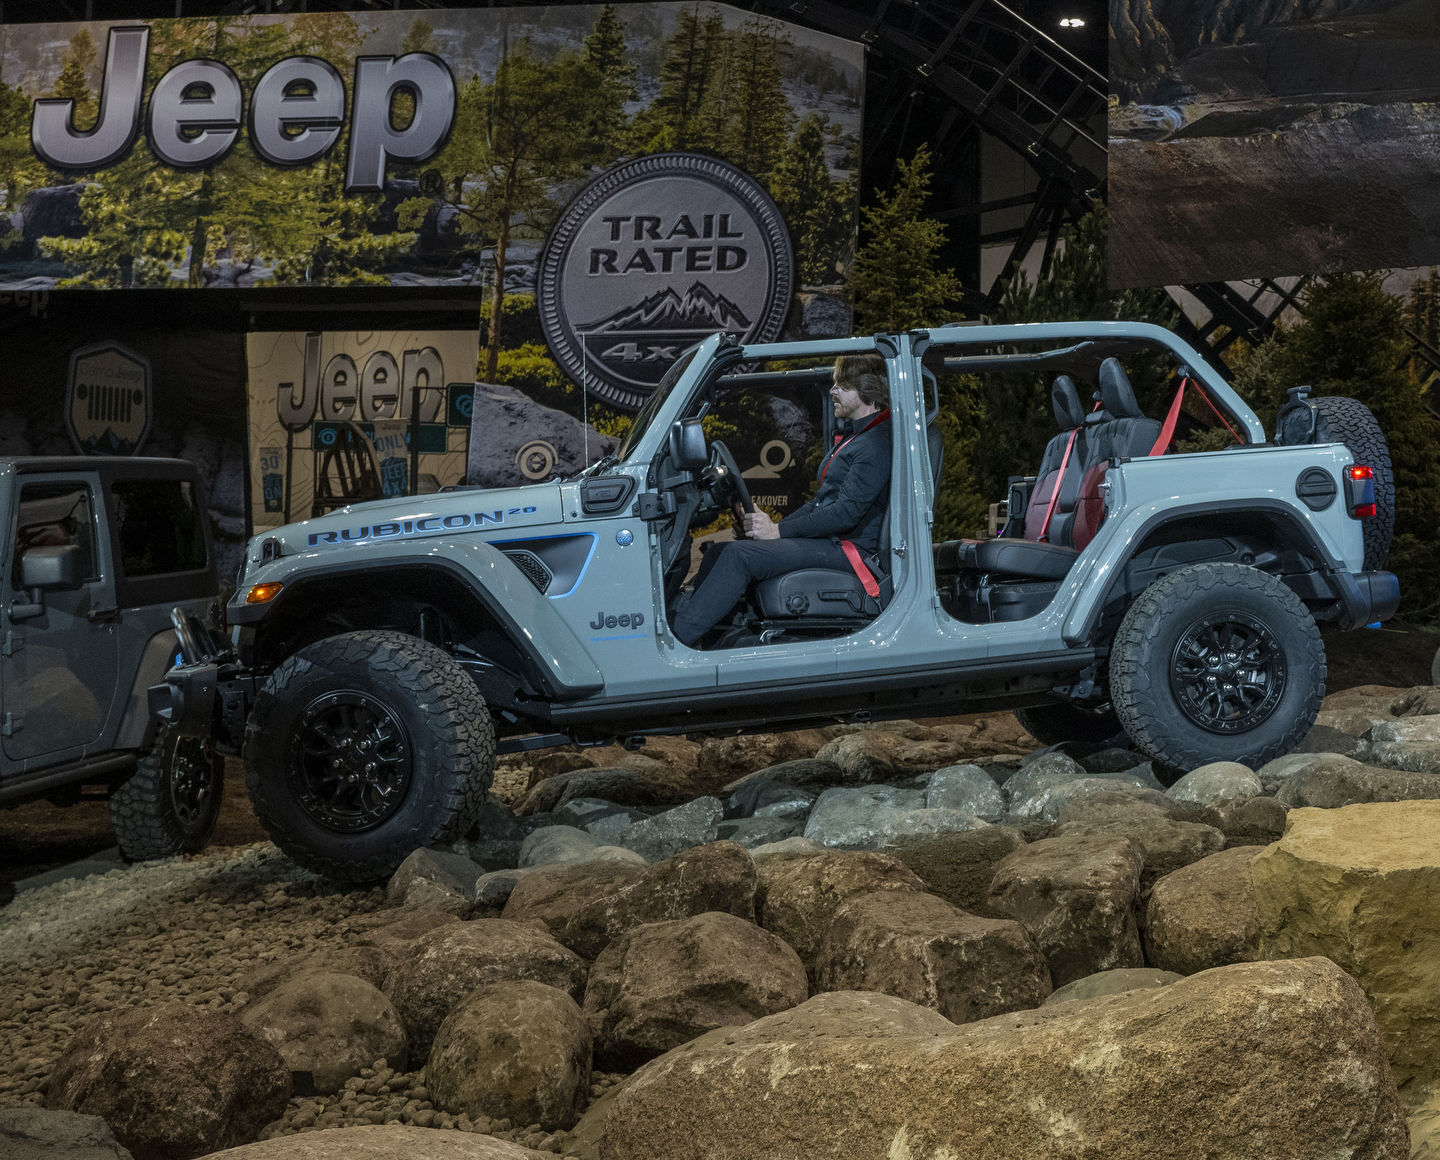 Jeep marque la vente du cinq millionième Wrangler avec le lancement d'un nouveau modèle